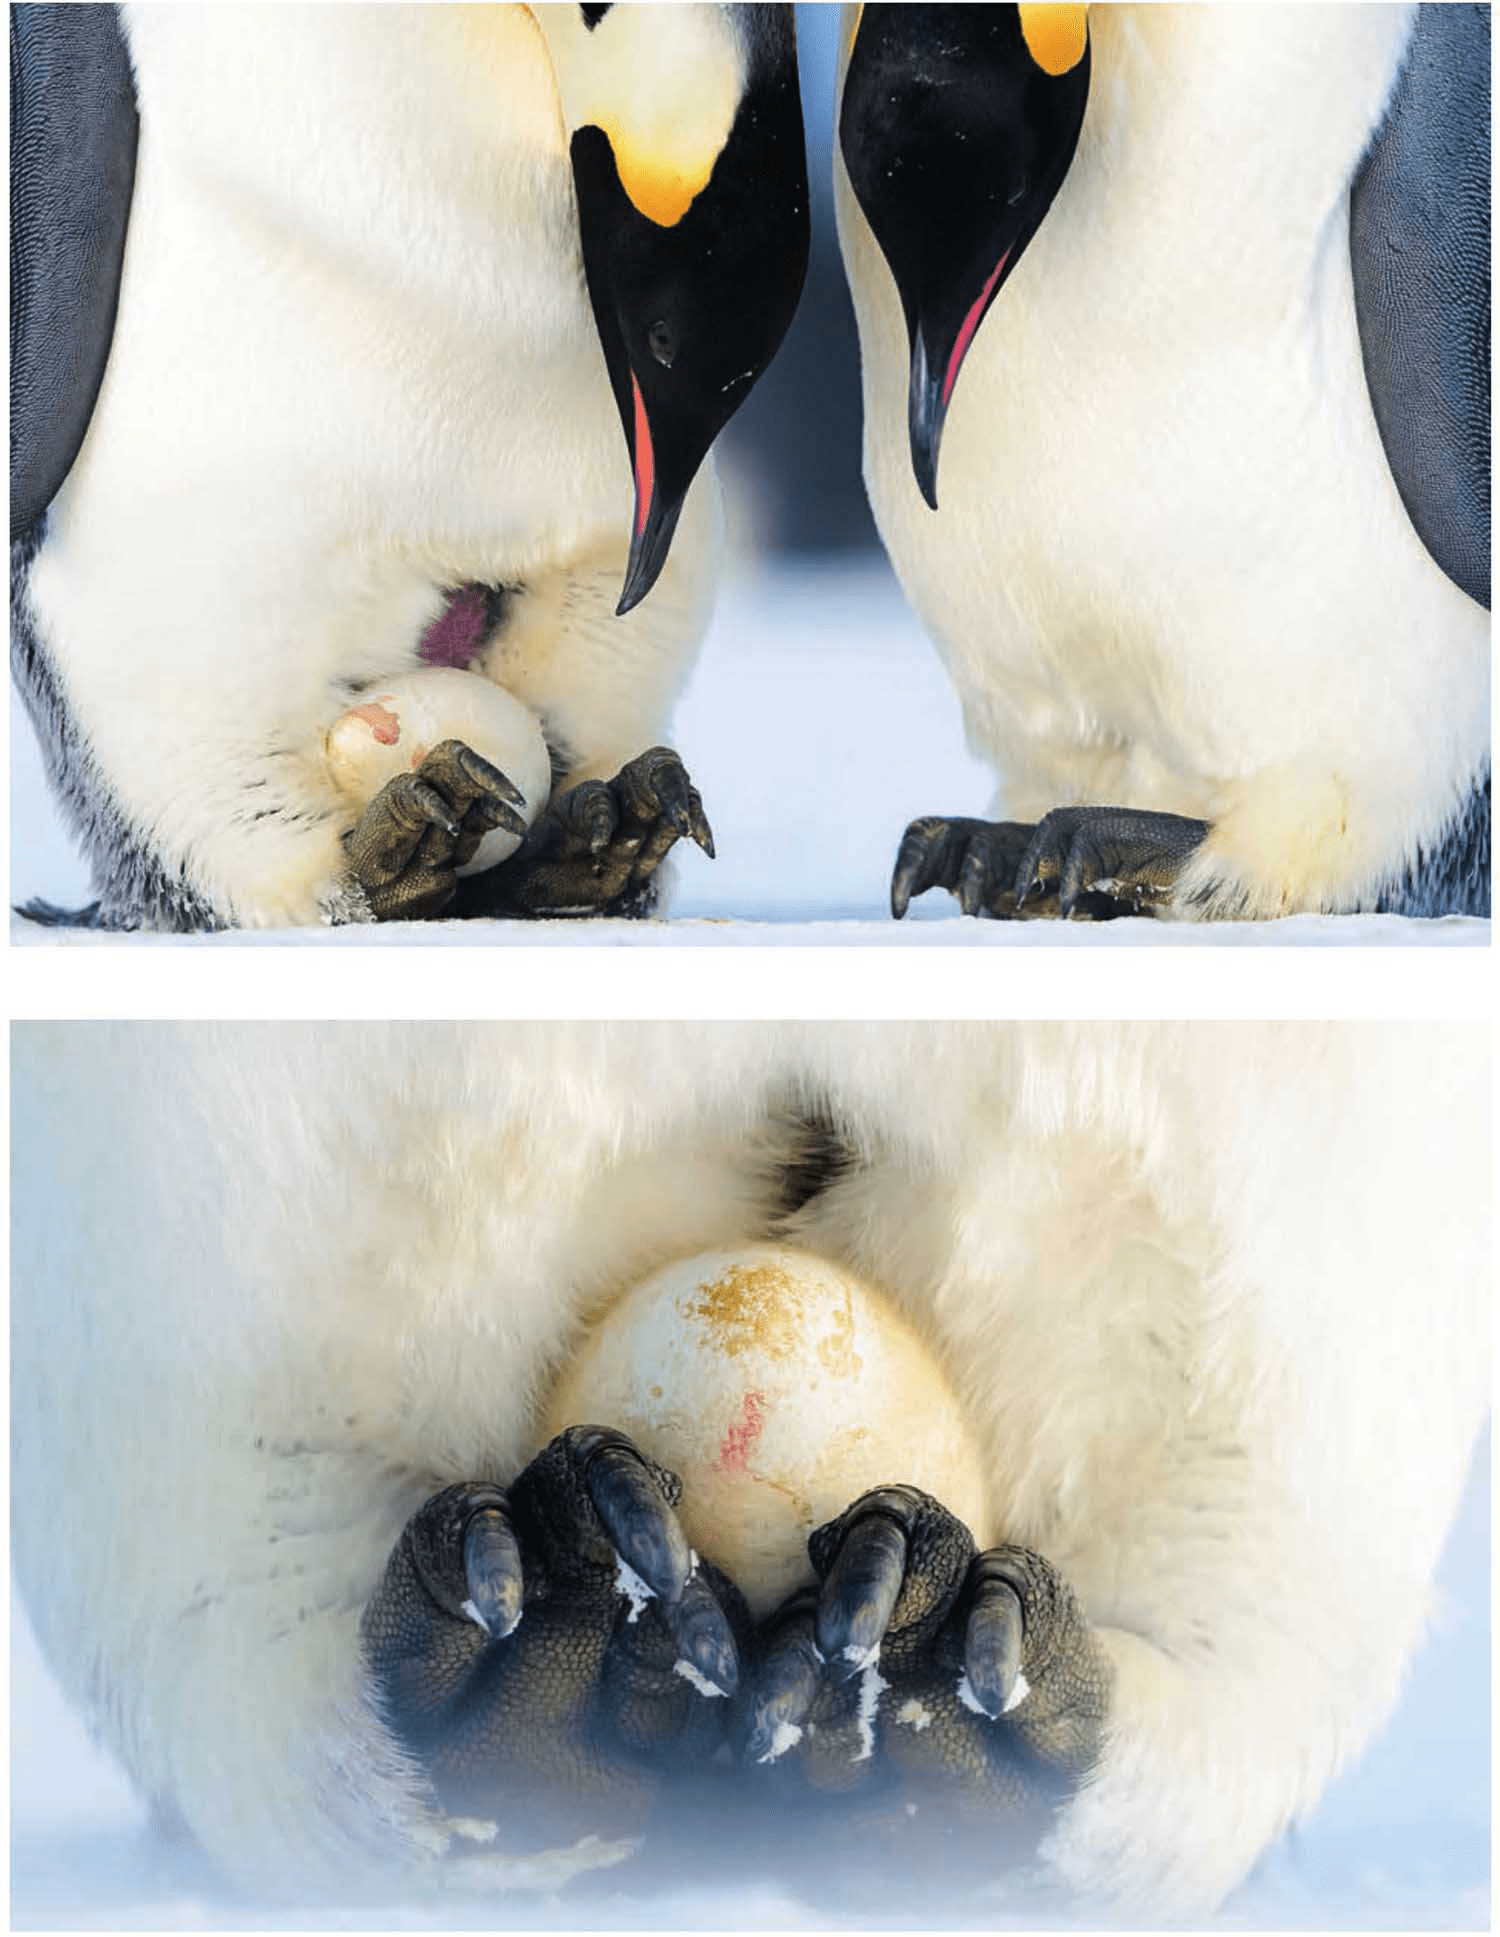 蛋不会冻坏吗?为什么帝企鹅要在寒冷的冬季繁殖?它们如何御寒?